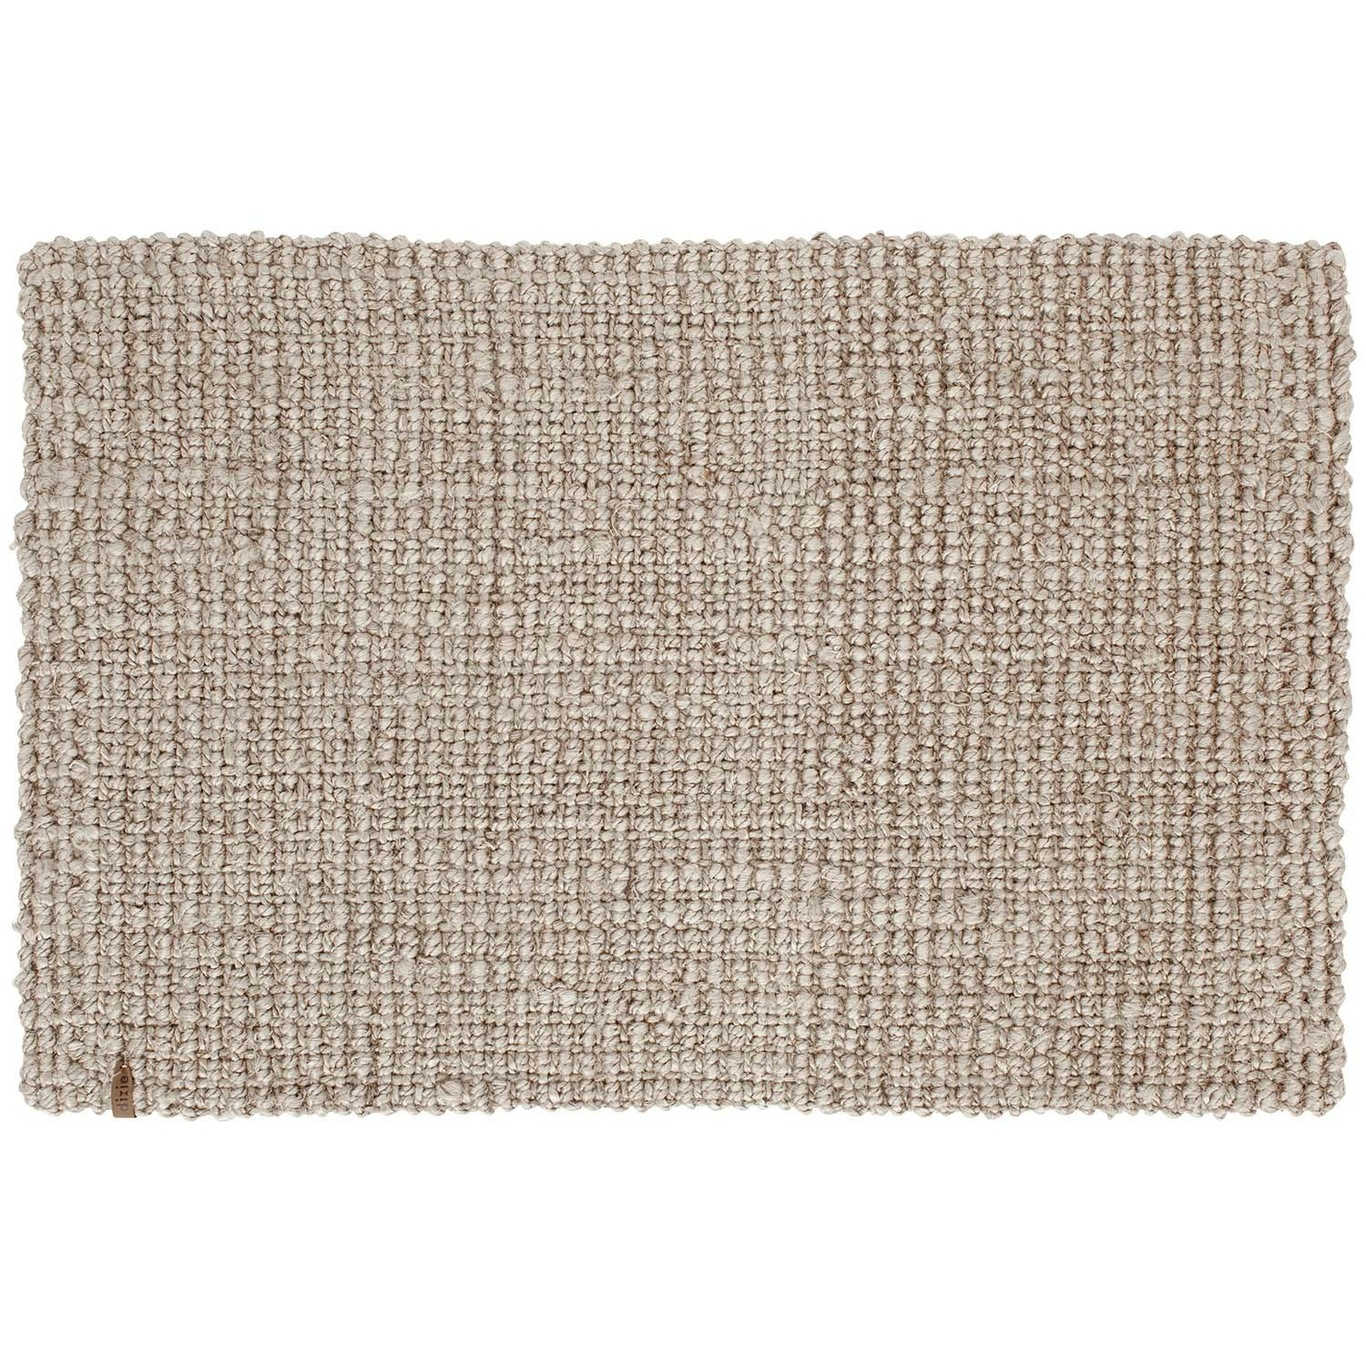 Jute Doormat 60x90 cm, Grey / Beige